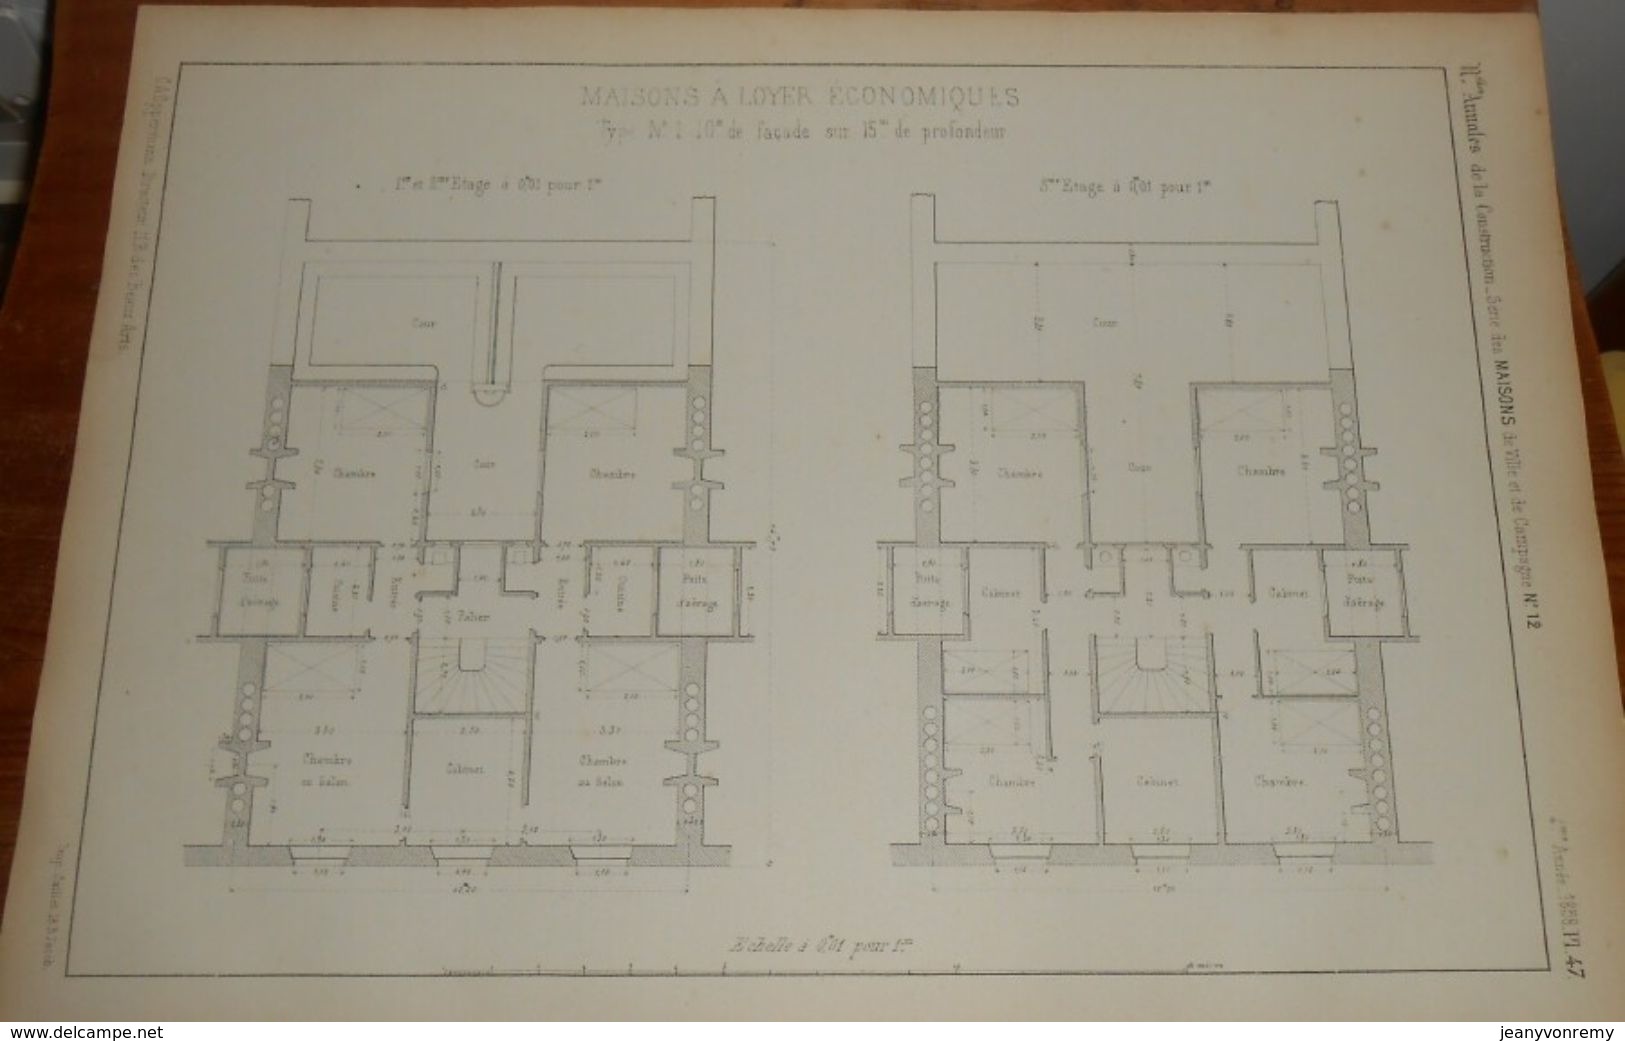 Plan De Maison à Loyer économique. 1858 - Opere Pubbliche